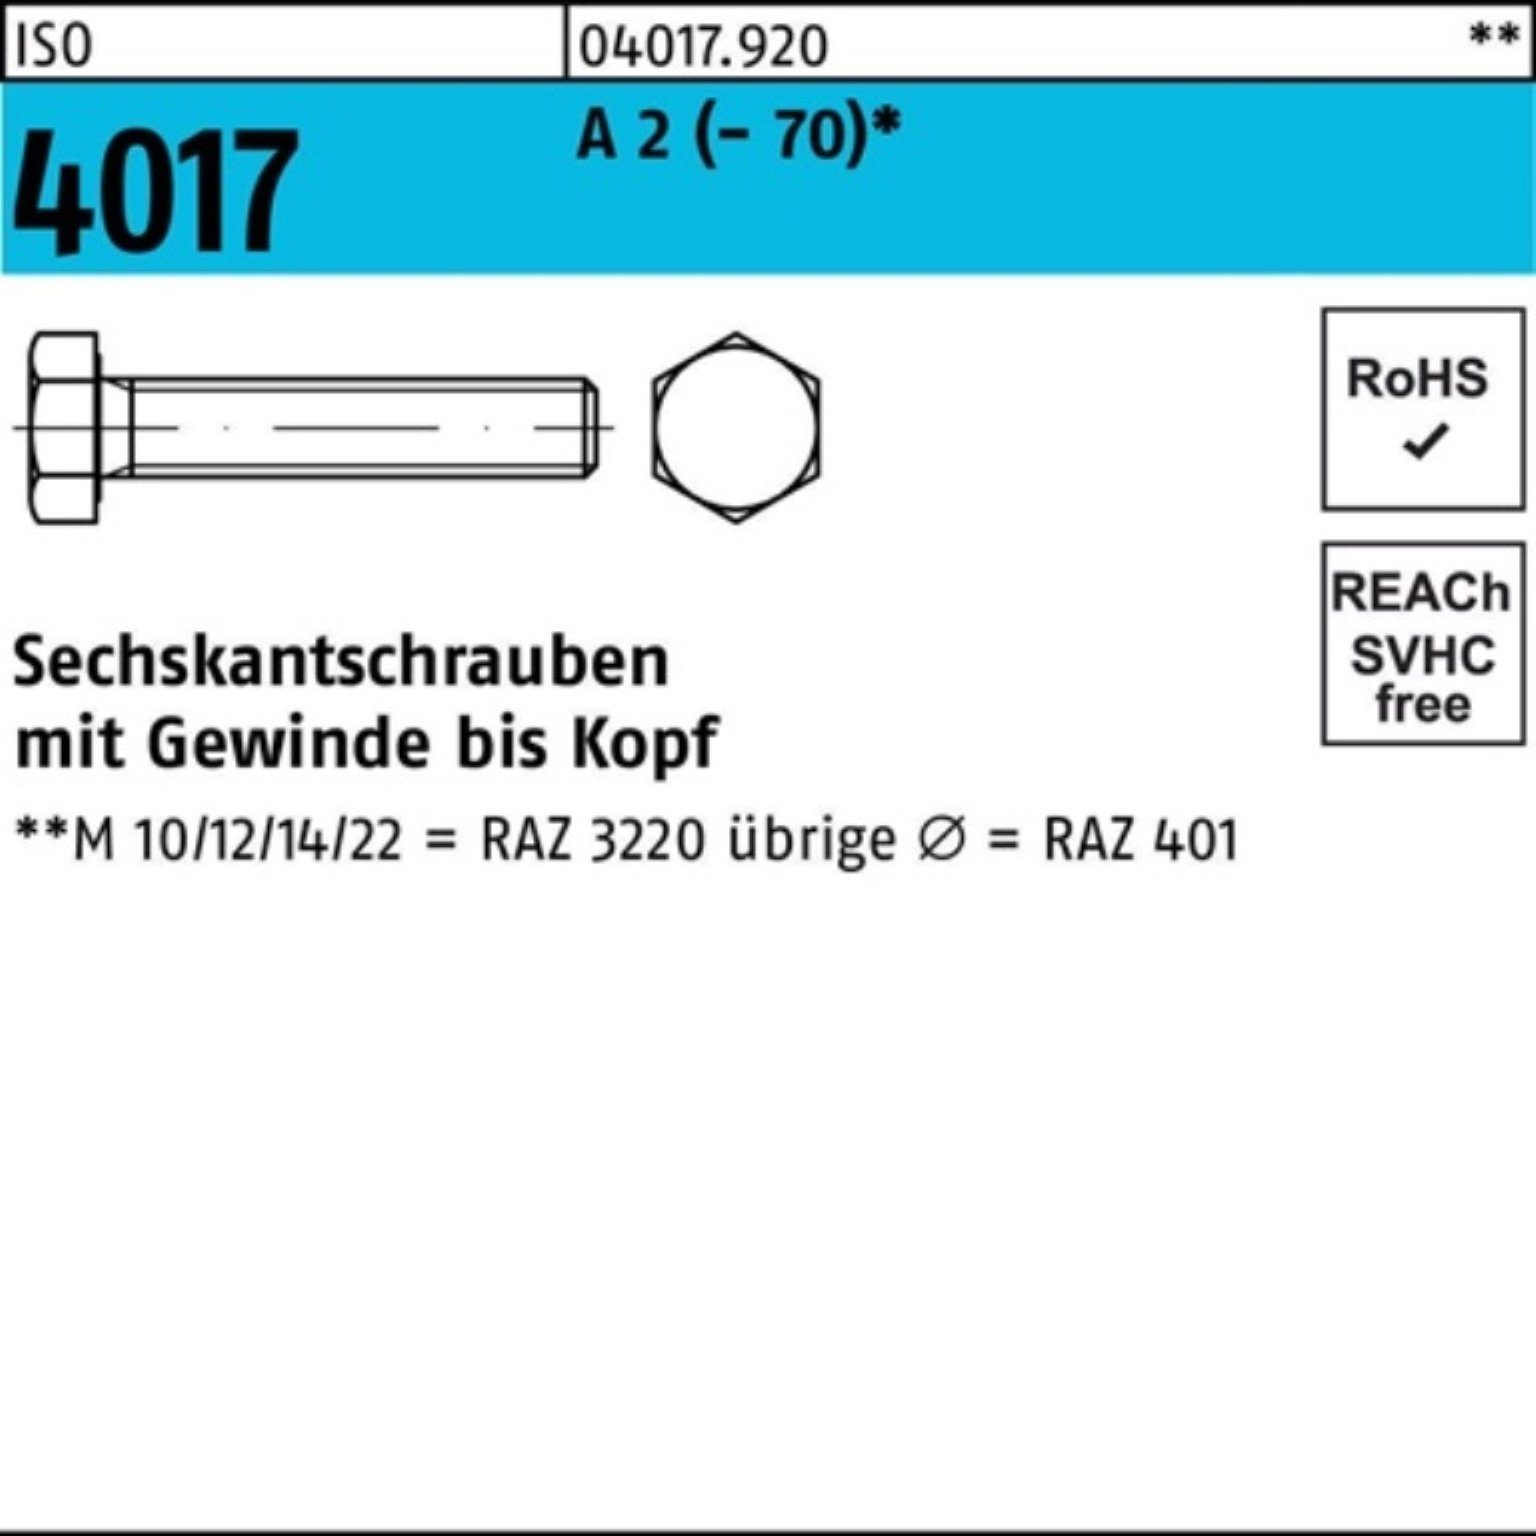 Bufab Sechskantschraube 100er Pack Sechskantschraube ISO 4017 VG M22x 65 A 2 (70) 10 Stück